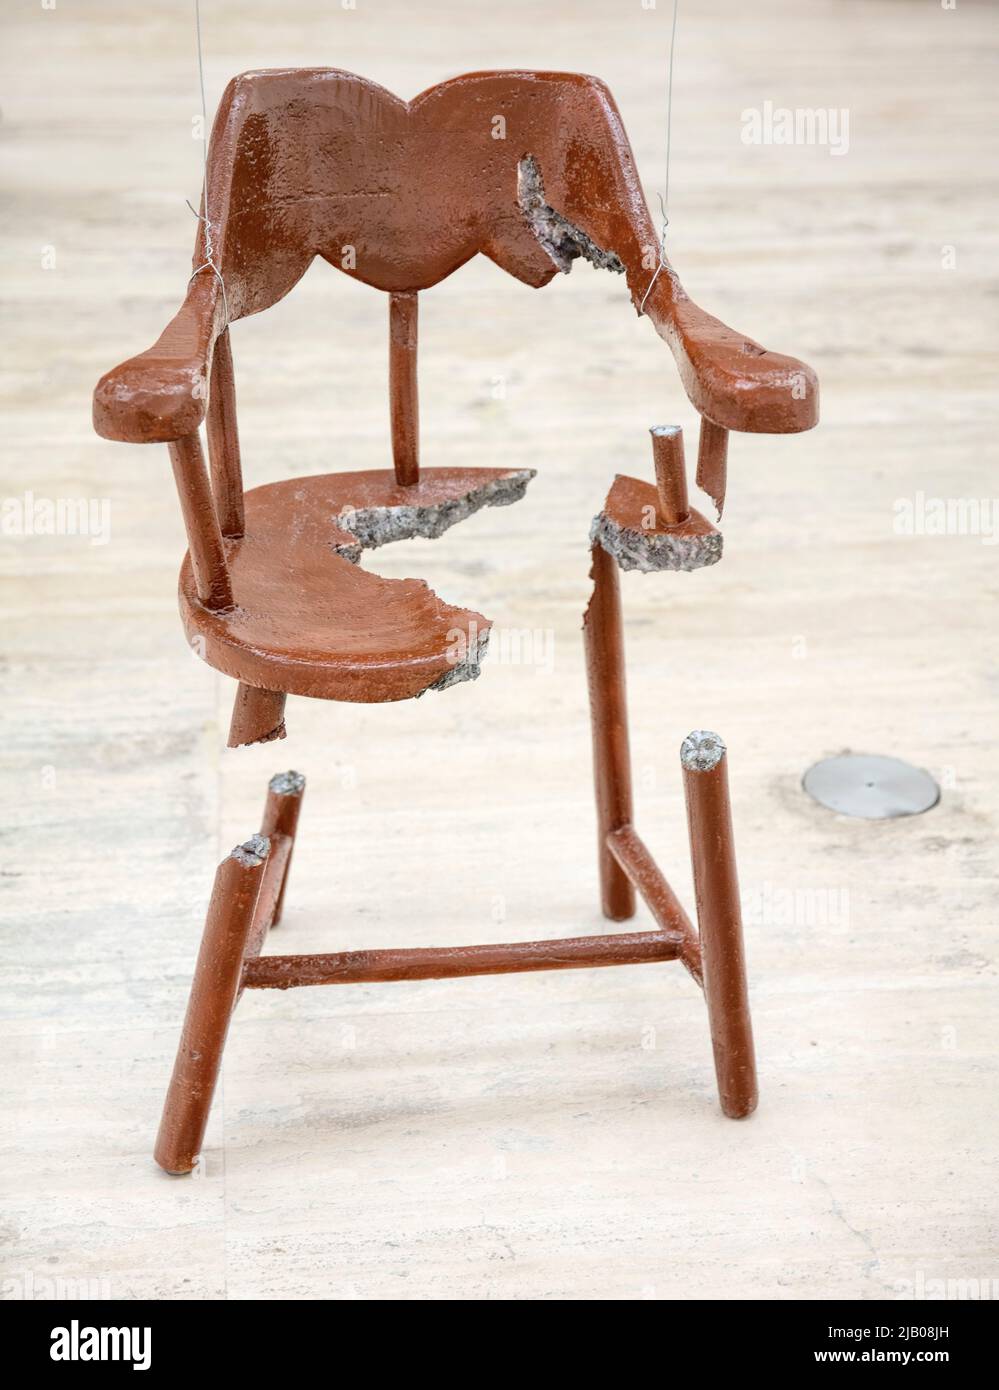 Œuvre de chaise fragmentée de l'artiste conceptuel suisse Urs Fischer au Jumex Museum of Contemporary Art, Polanco, Mexico, Mexique Banque D'Images